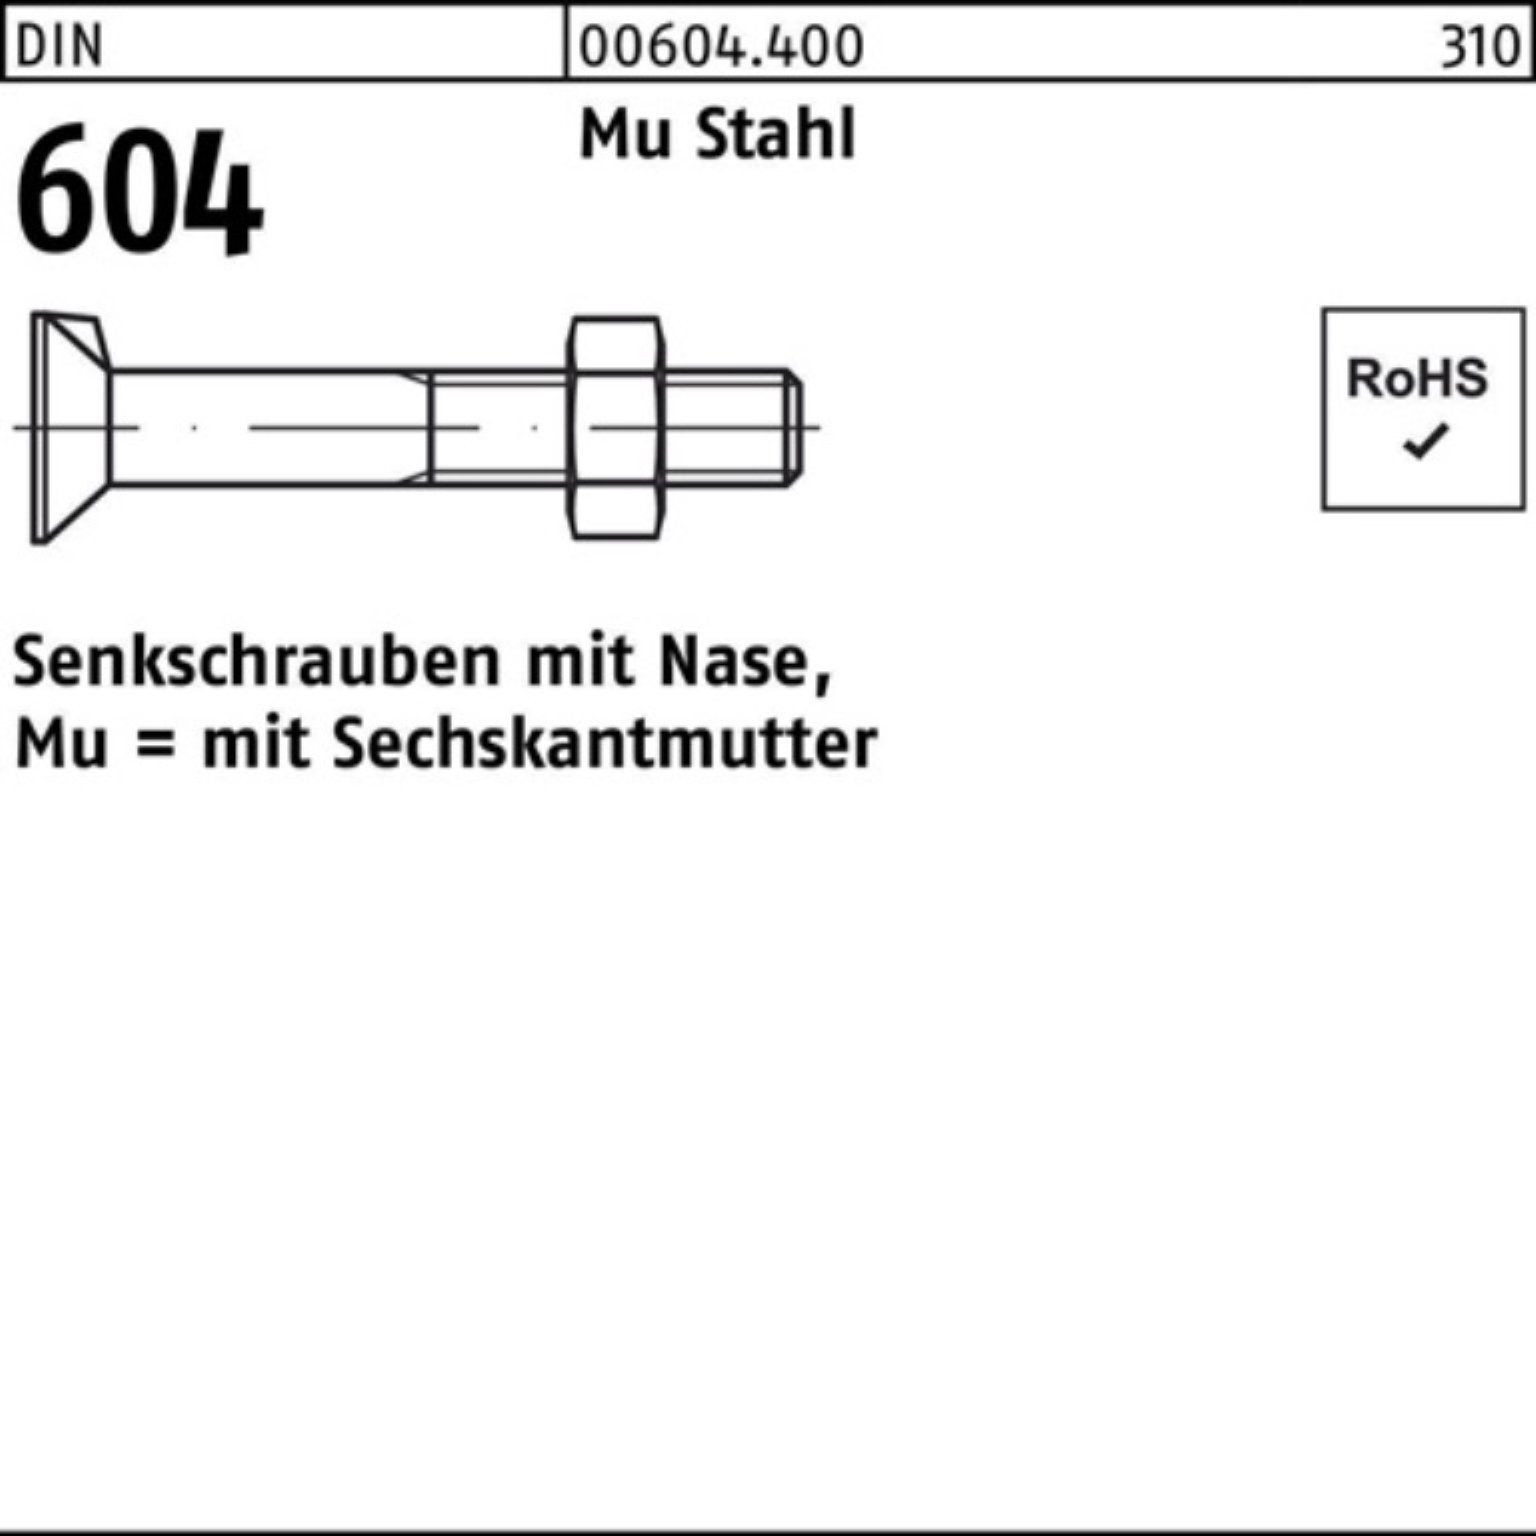 Reyher Senkschraube 100er Pack Senkschraube Nase/6-ktmutter 80 Mu DIN Stahl 604 4.6 M16x 2